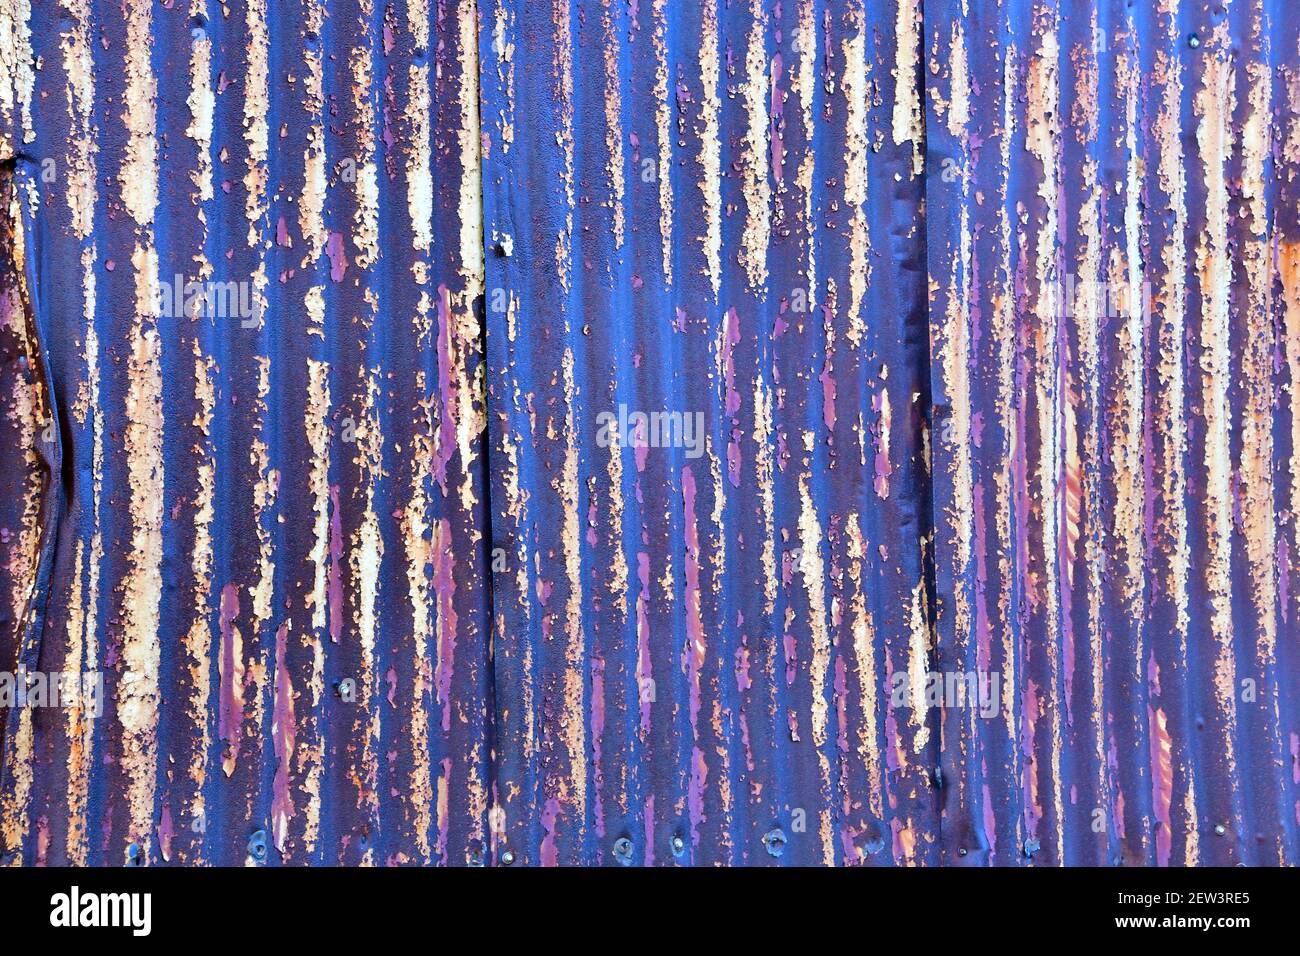 Una pared de estaño está pintada con tonos de púple y atada a un fondo perfectamente abstracto, muy texturizado. Foto de stock